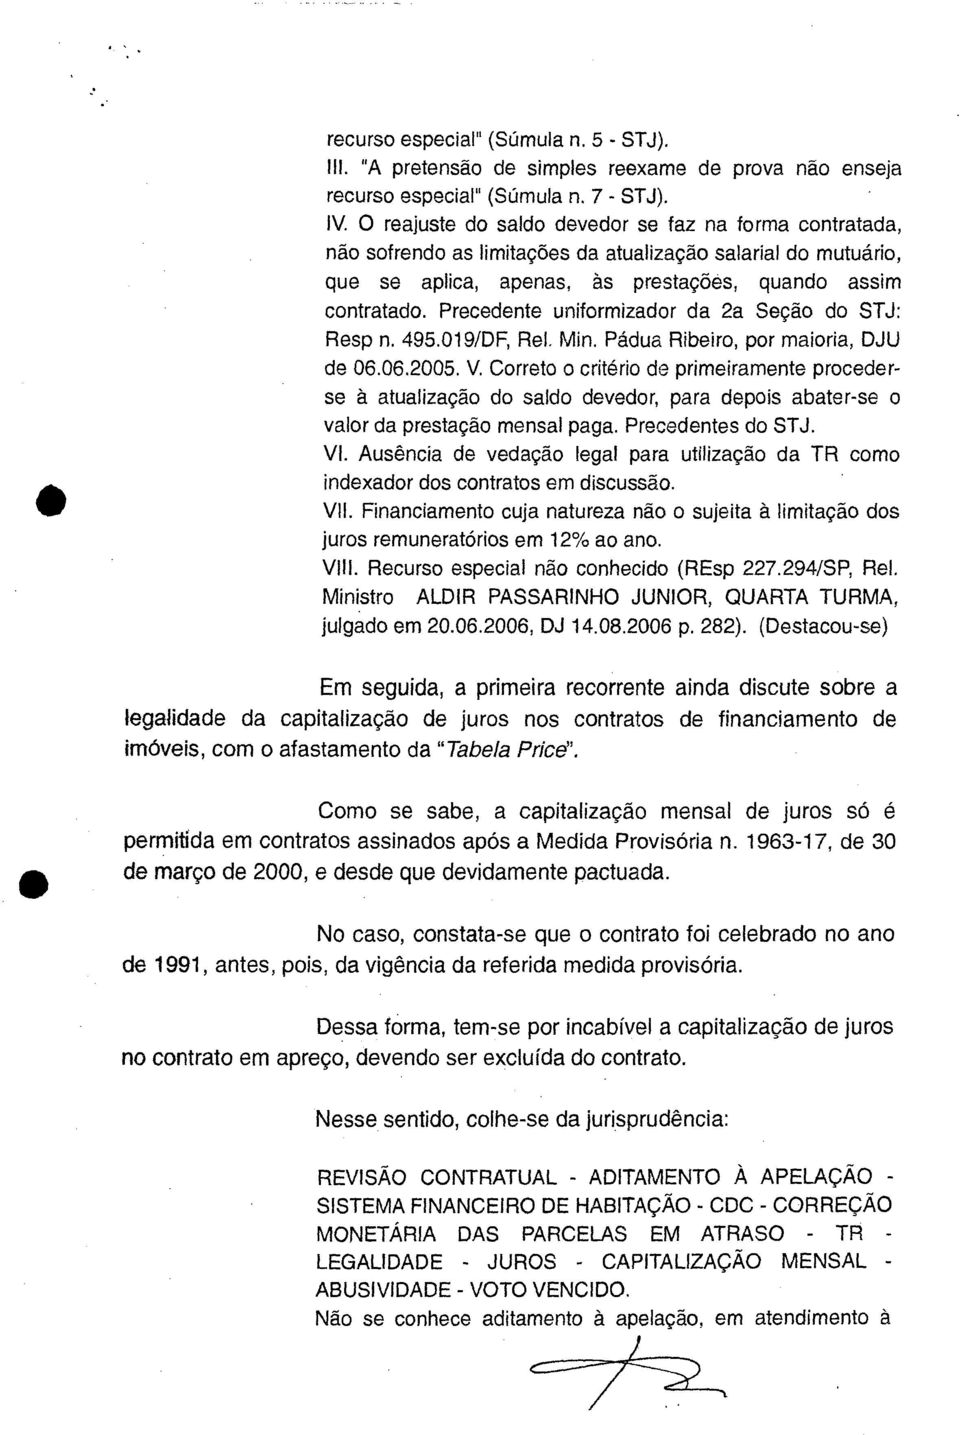 Precedente uniformizador da 2a Seção do STJ: Resp n. 495.019/DF, Rel. Min. Pádua Ribeiro, por maioria, DJU de 06.06.2005. V.